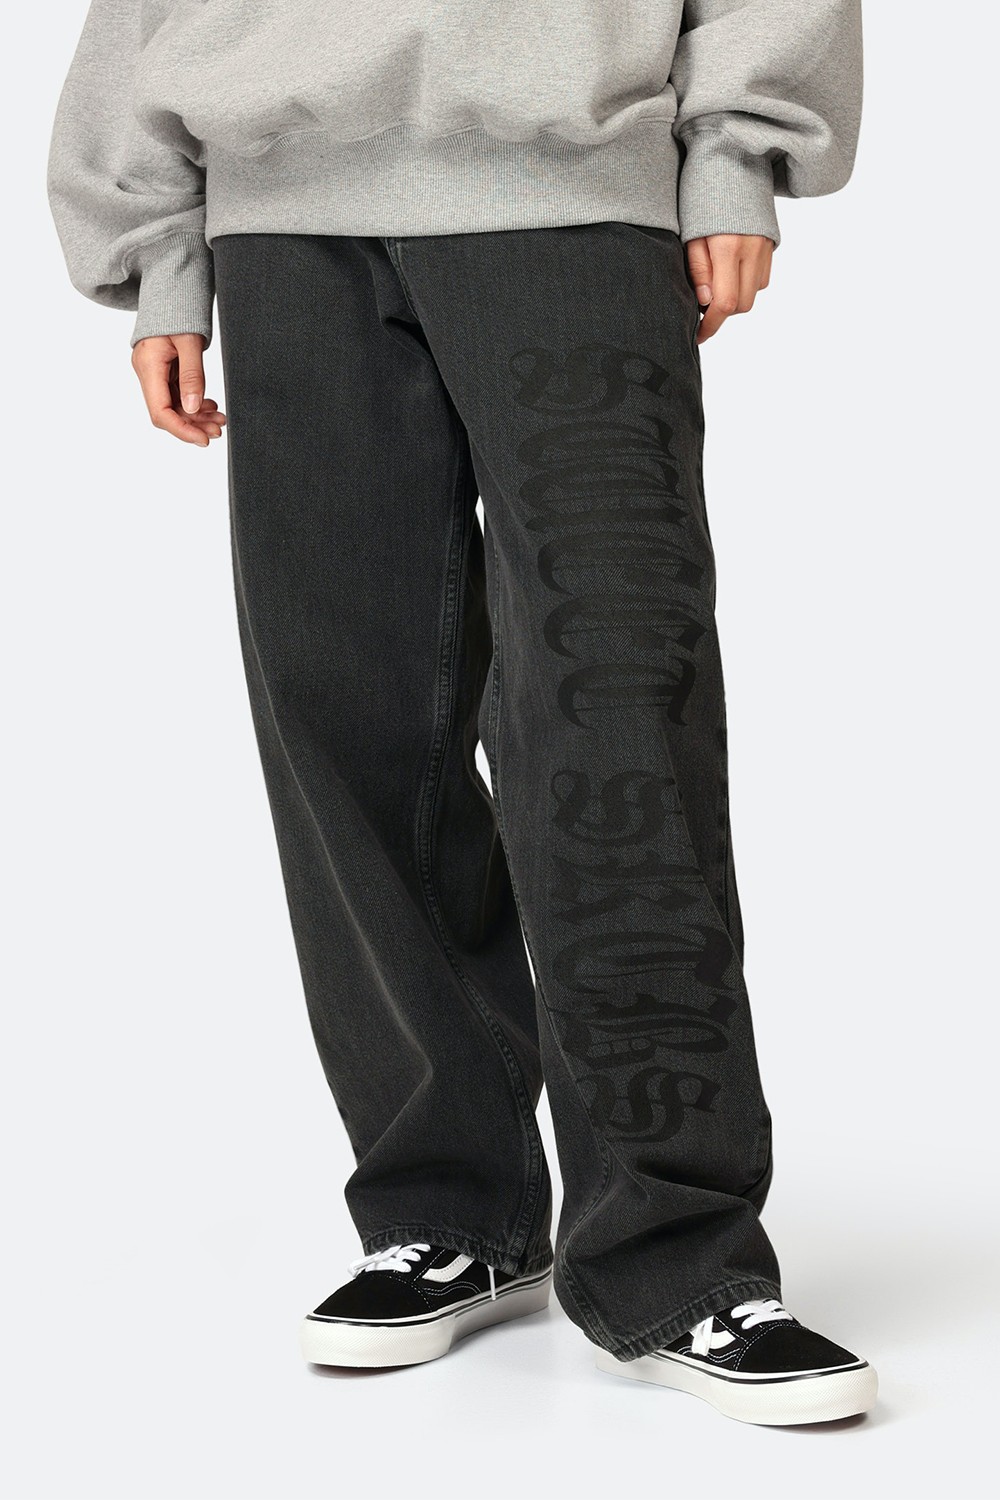 Printed Baggy Skate Jean (SWT-3)